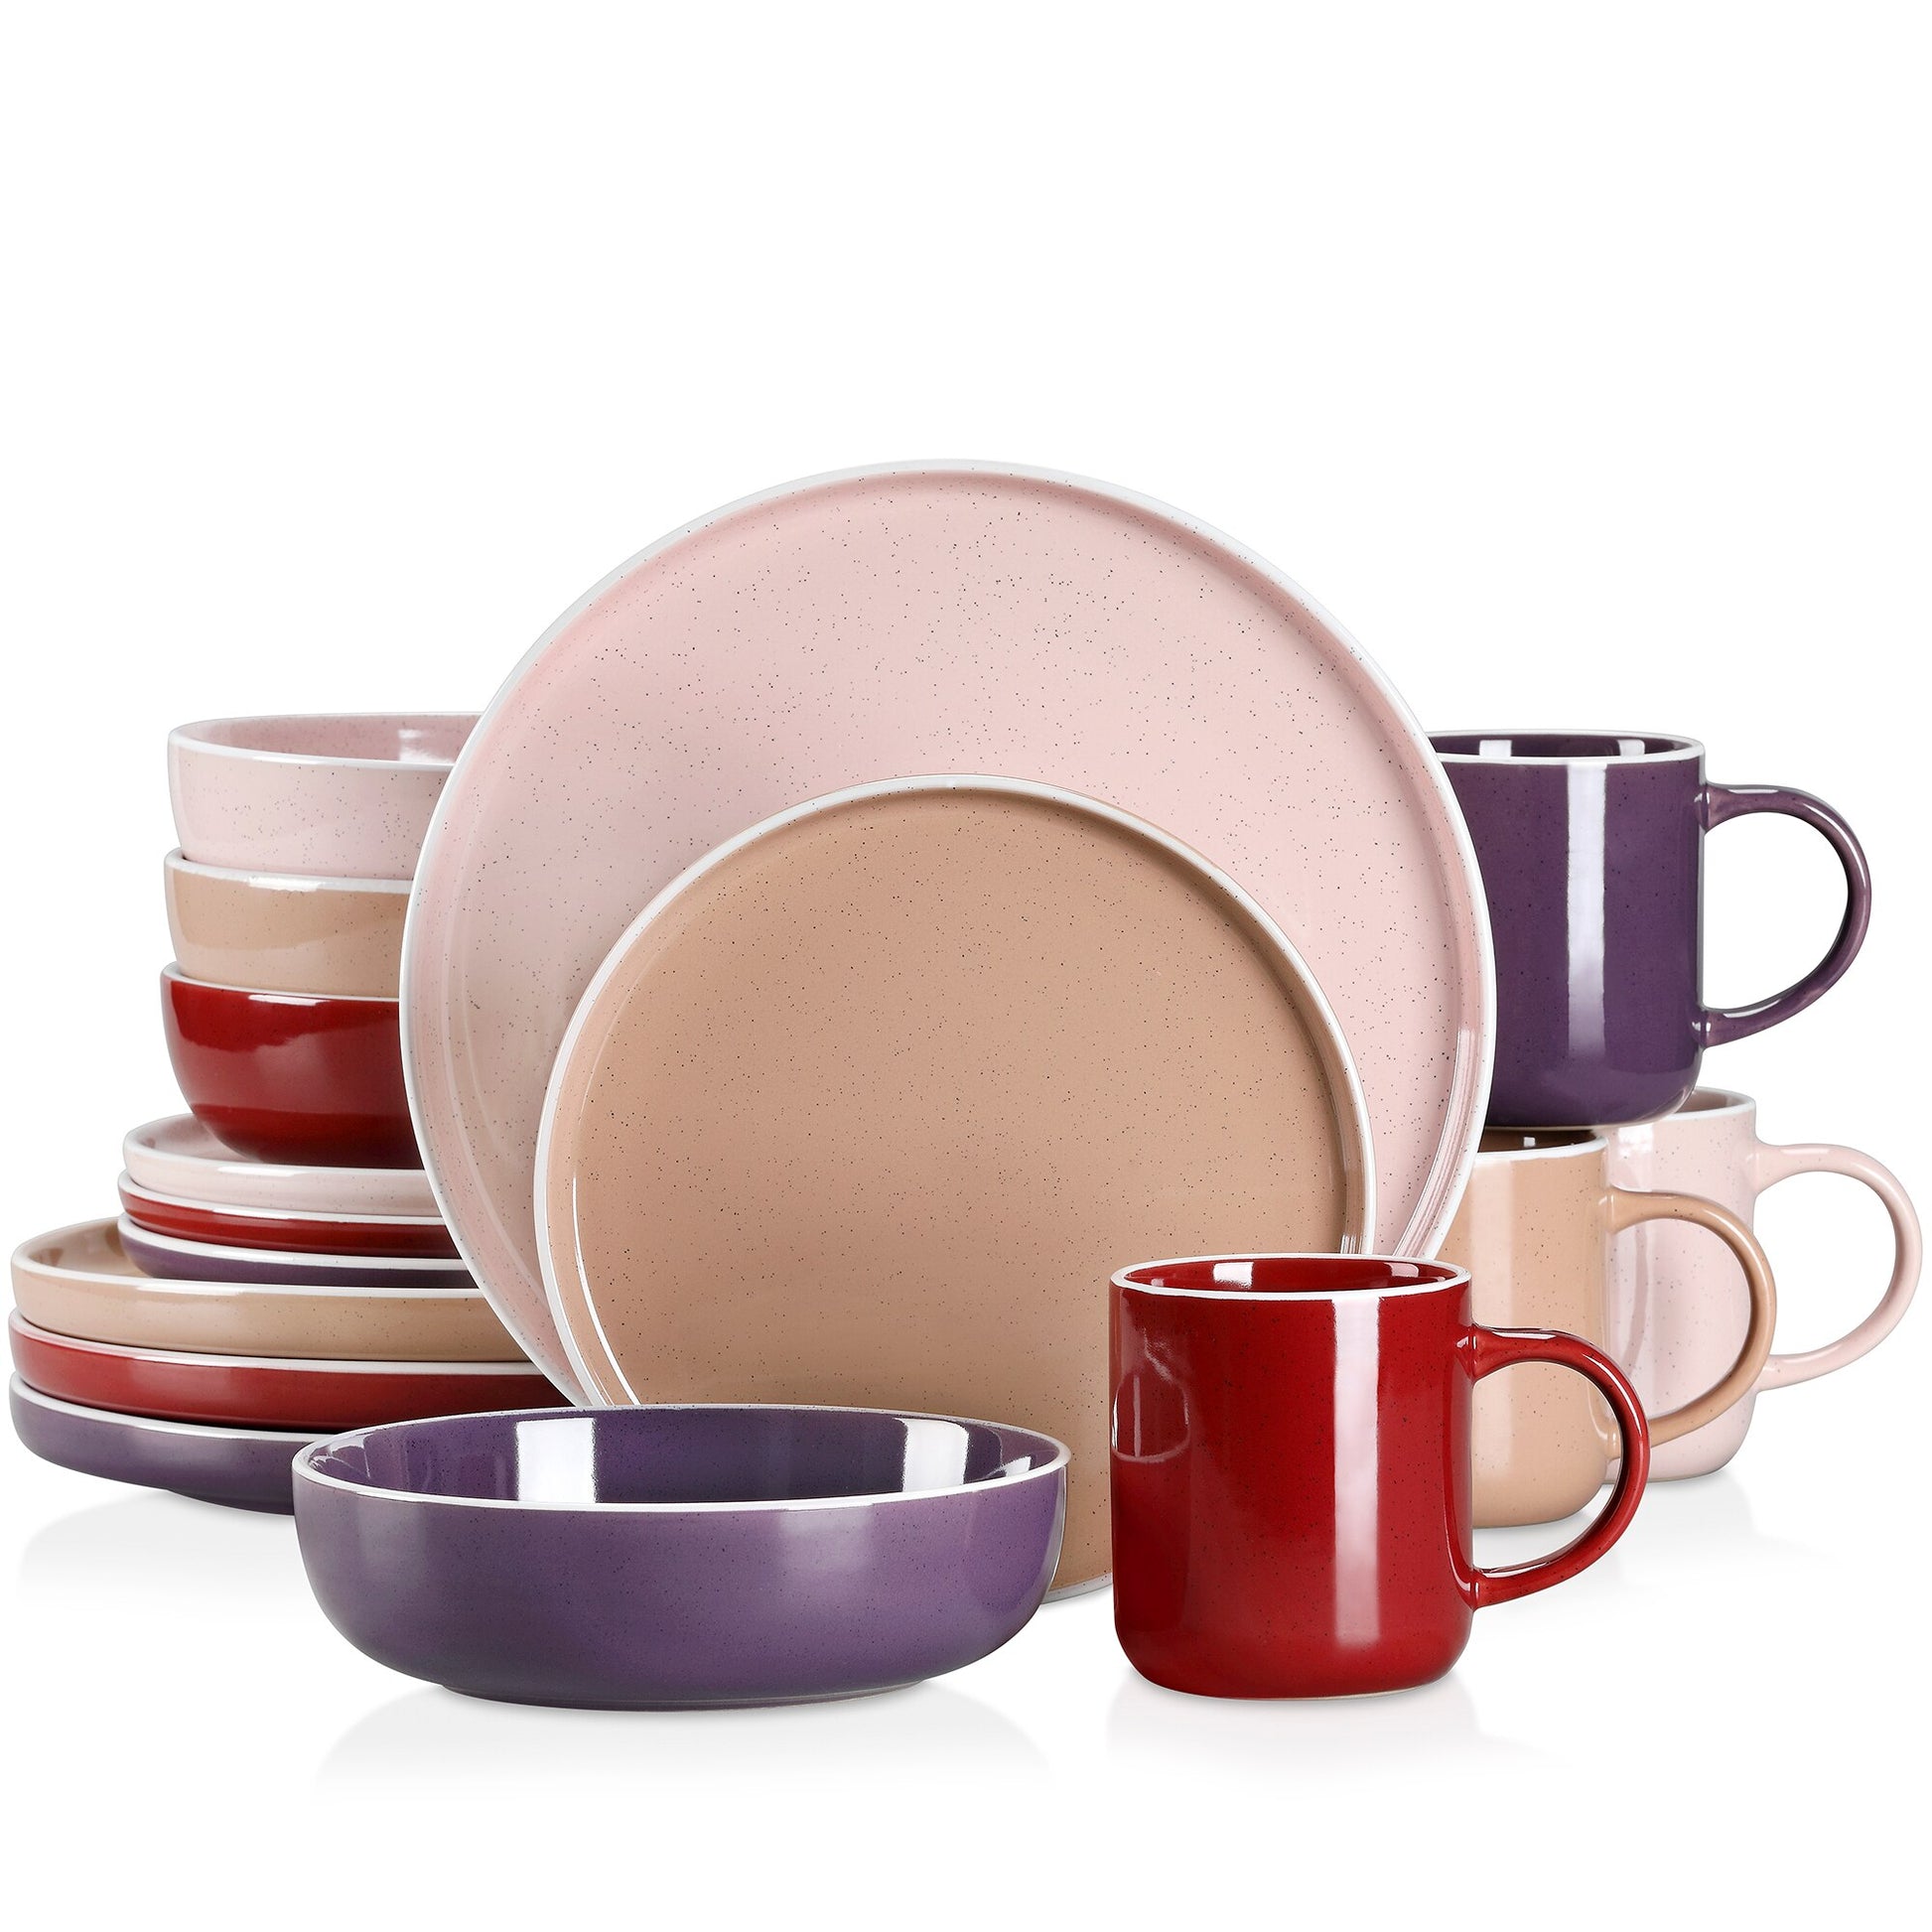 16/32/48 teiliges weißes Stoneware-Set mit Sesame Glaze Ceramic Dinnerware-Set - Unique Outlet